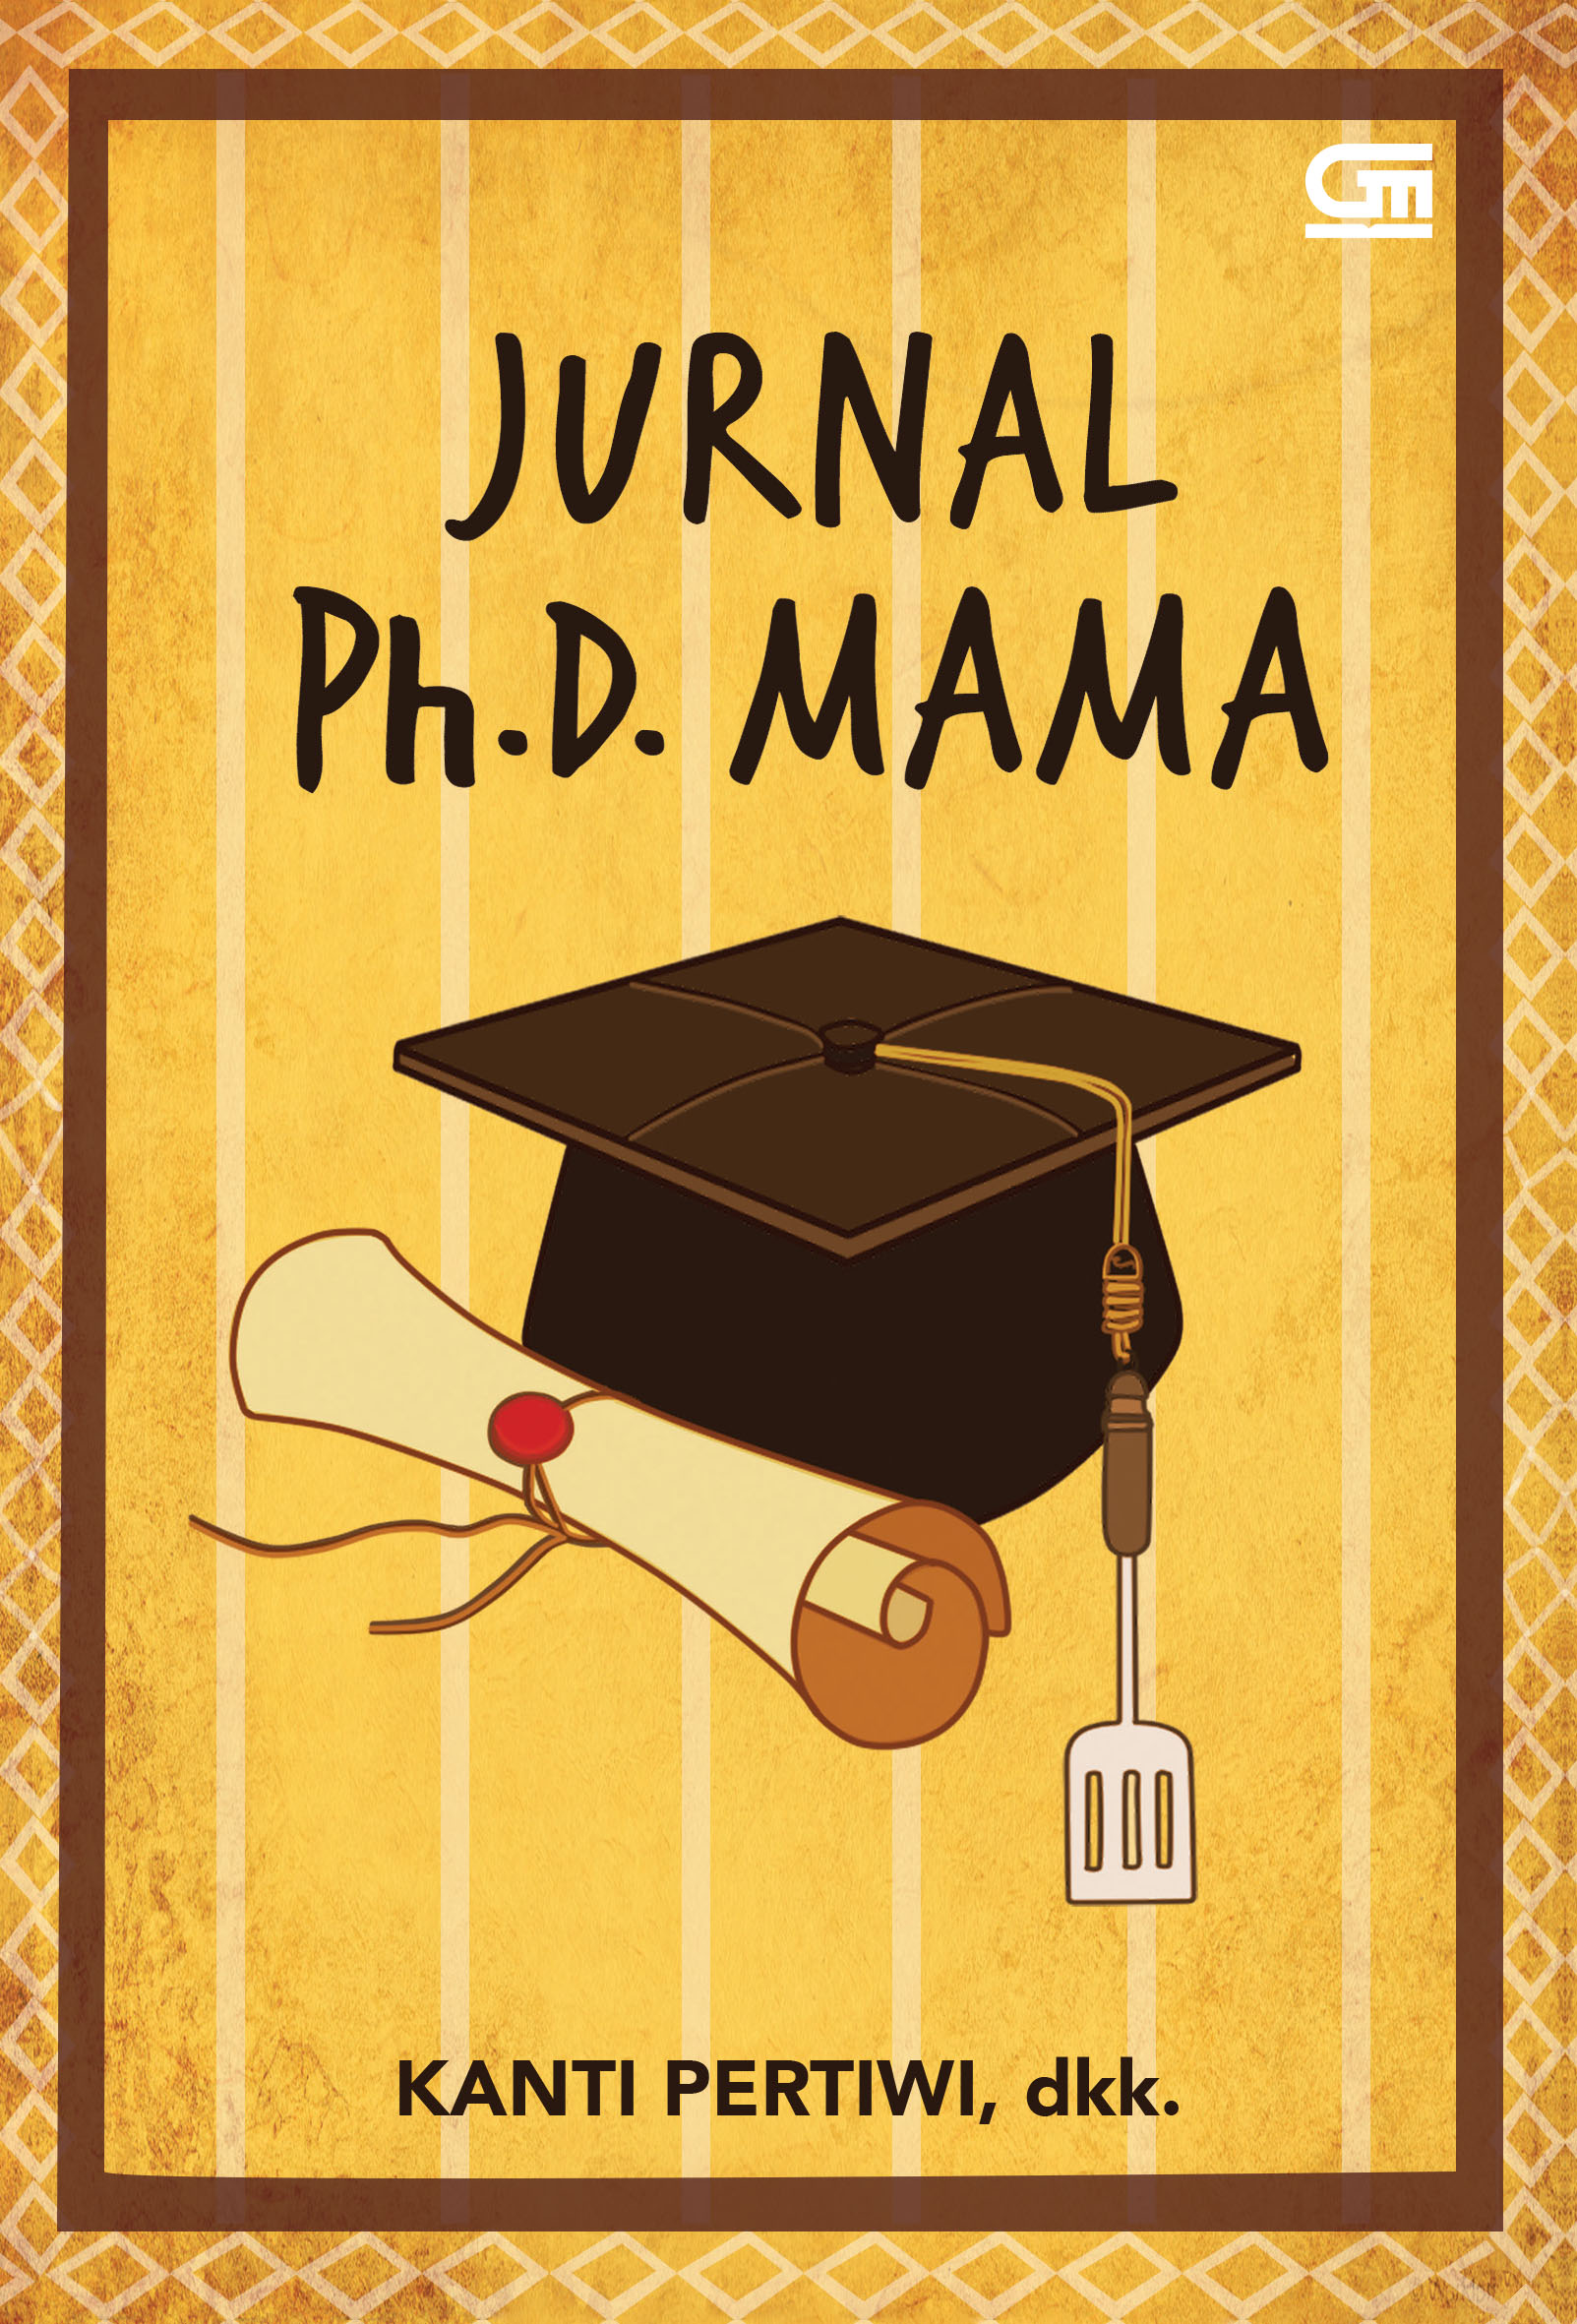 Jurnal Ph.D. Mama